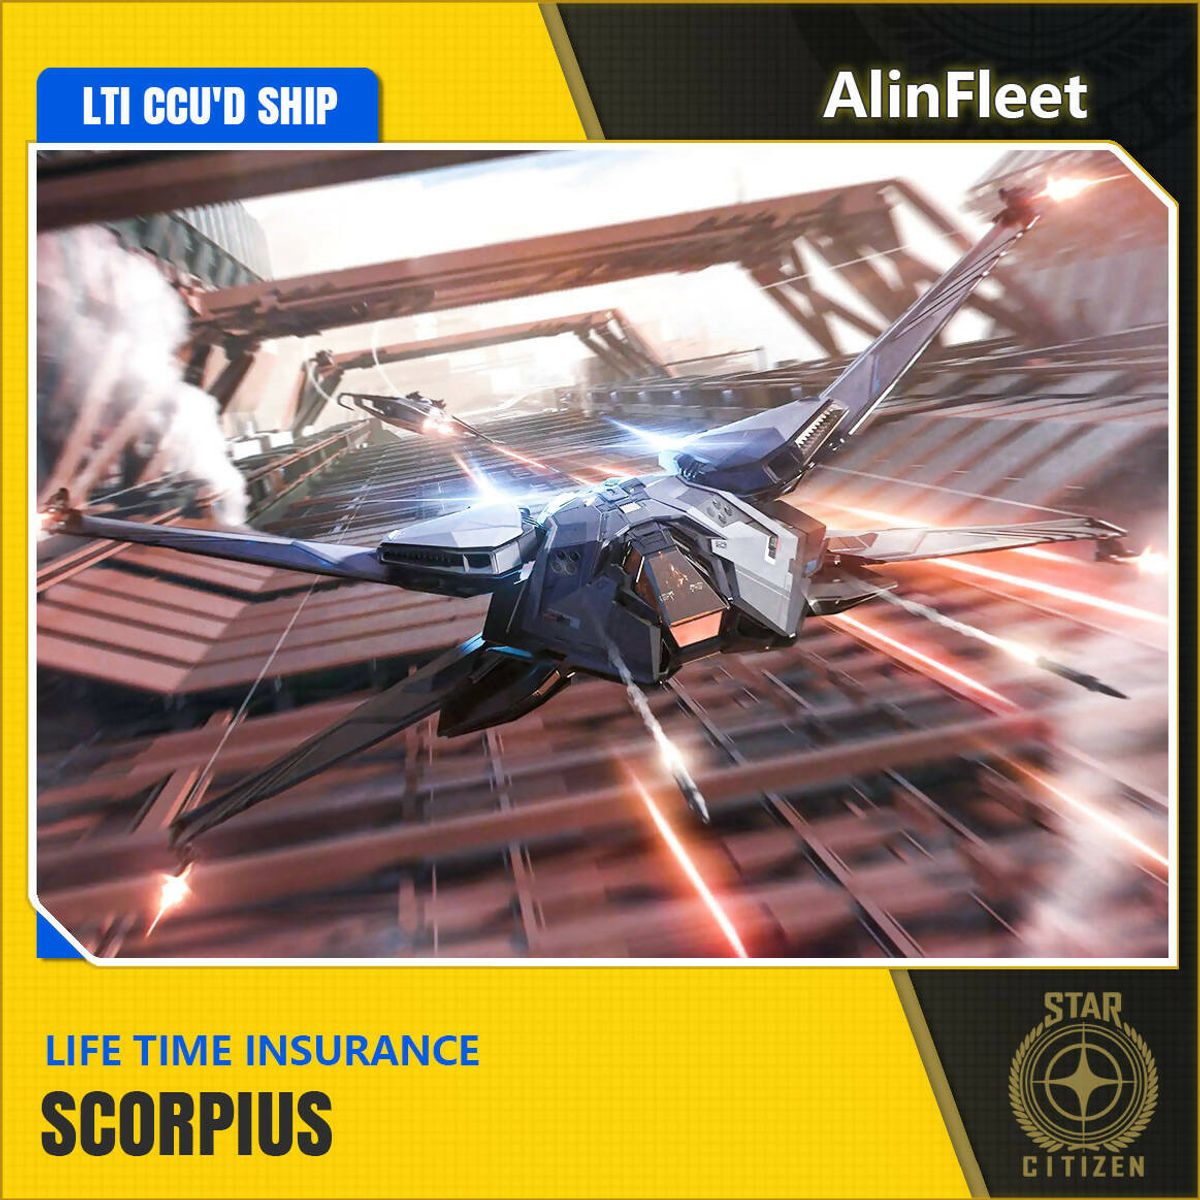 Scorpius - LTI Insurance - CCU'd Ship